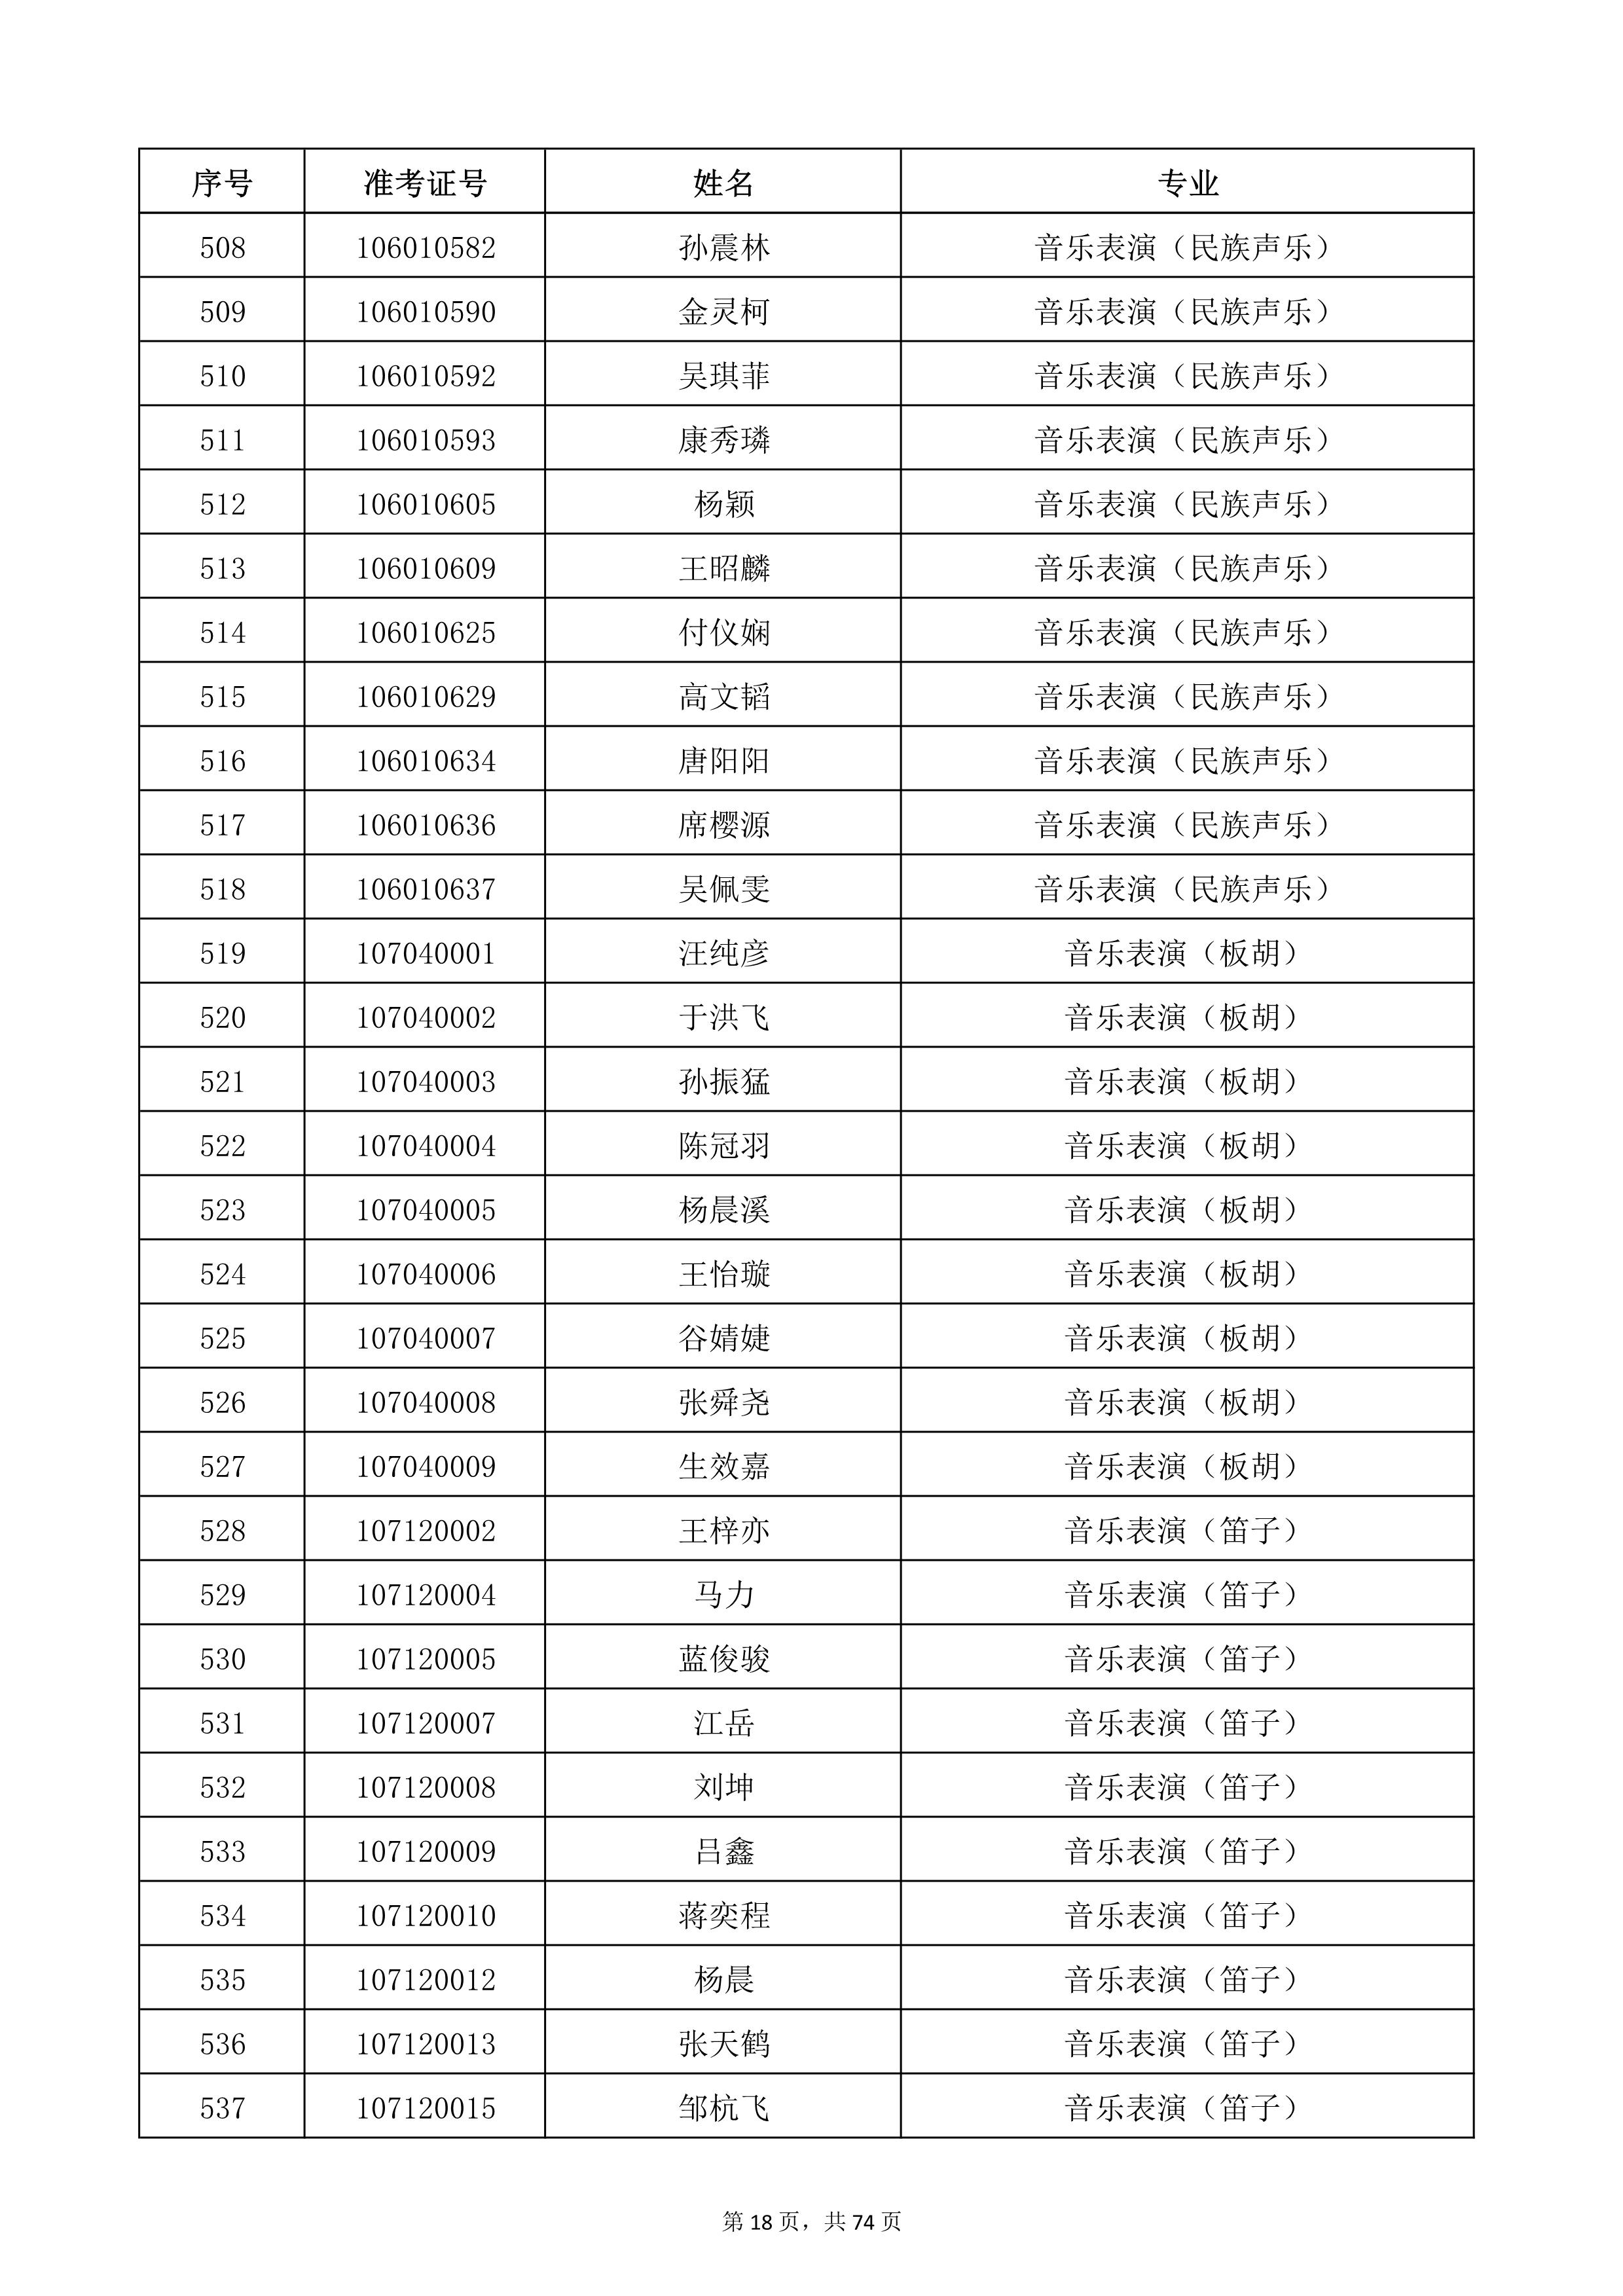 天津音乐学院2022年本科招生考试复试名单_18.jpg